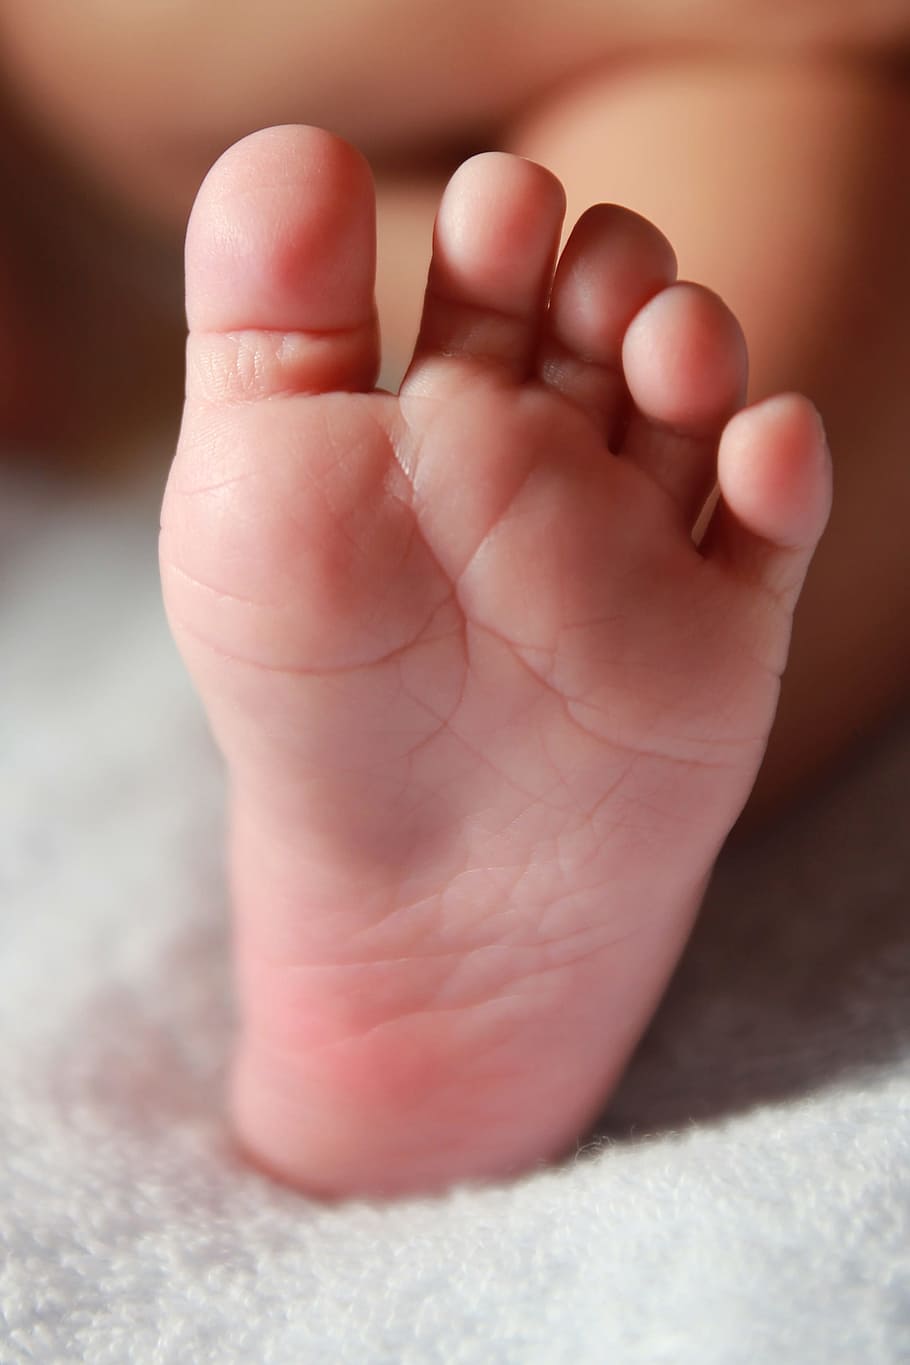 kaki orang kiri, Baru Lahir, Bayi, Kaki, kaki bayi, bayi baru lahir, anak, kecil, masa kanak-kanak, tubuh